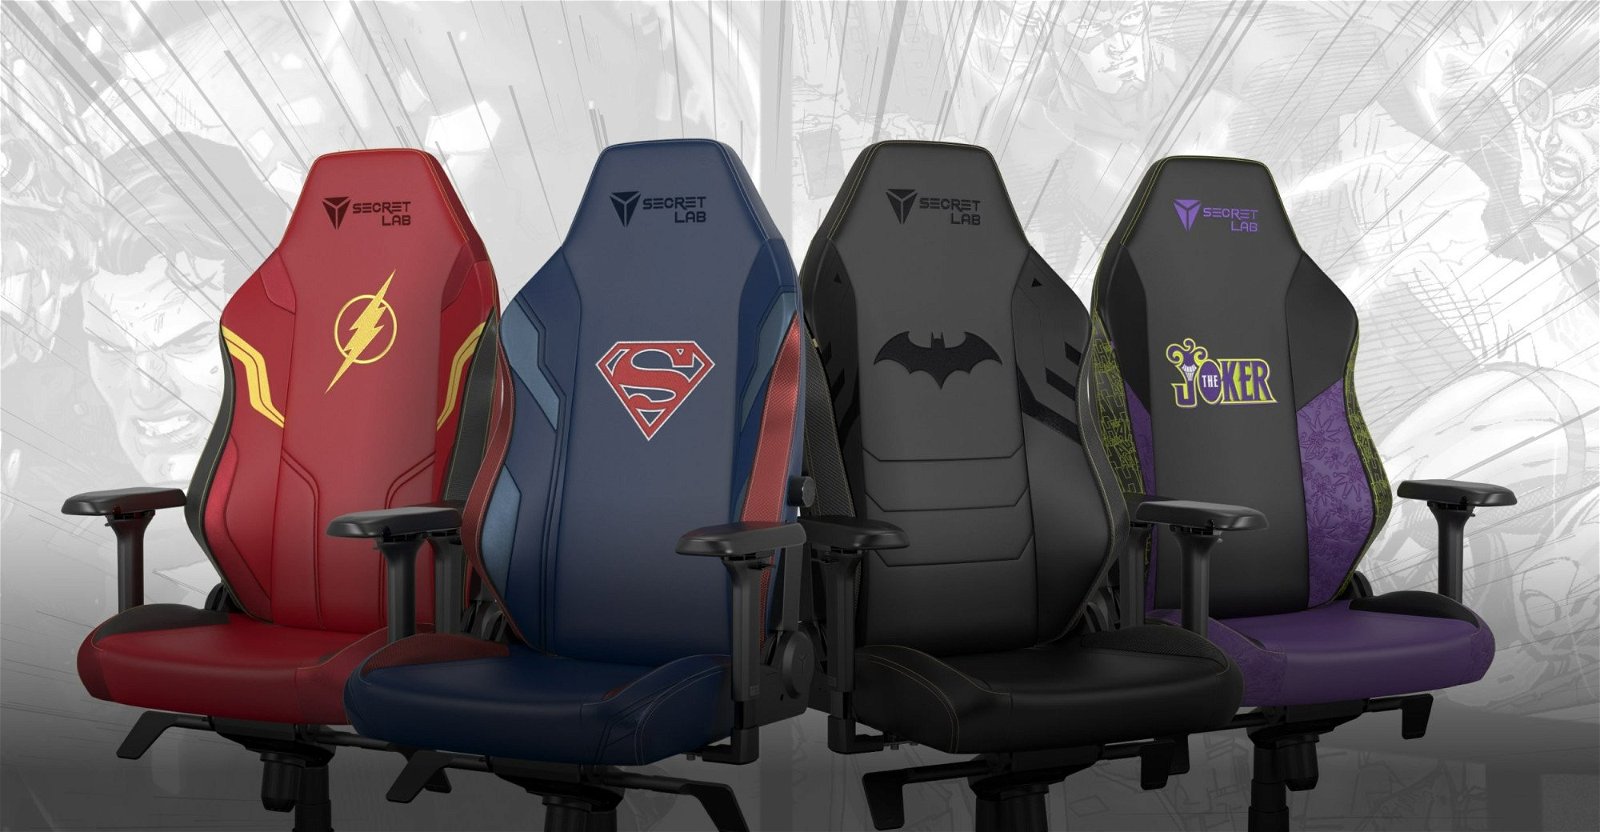 Immagine di Secretlab: fino a 200€ di sconto sulle migliori sedie gaming!